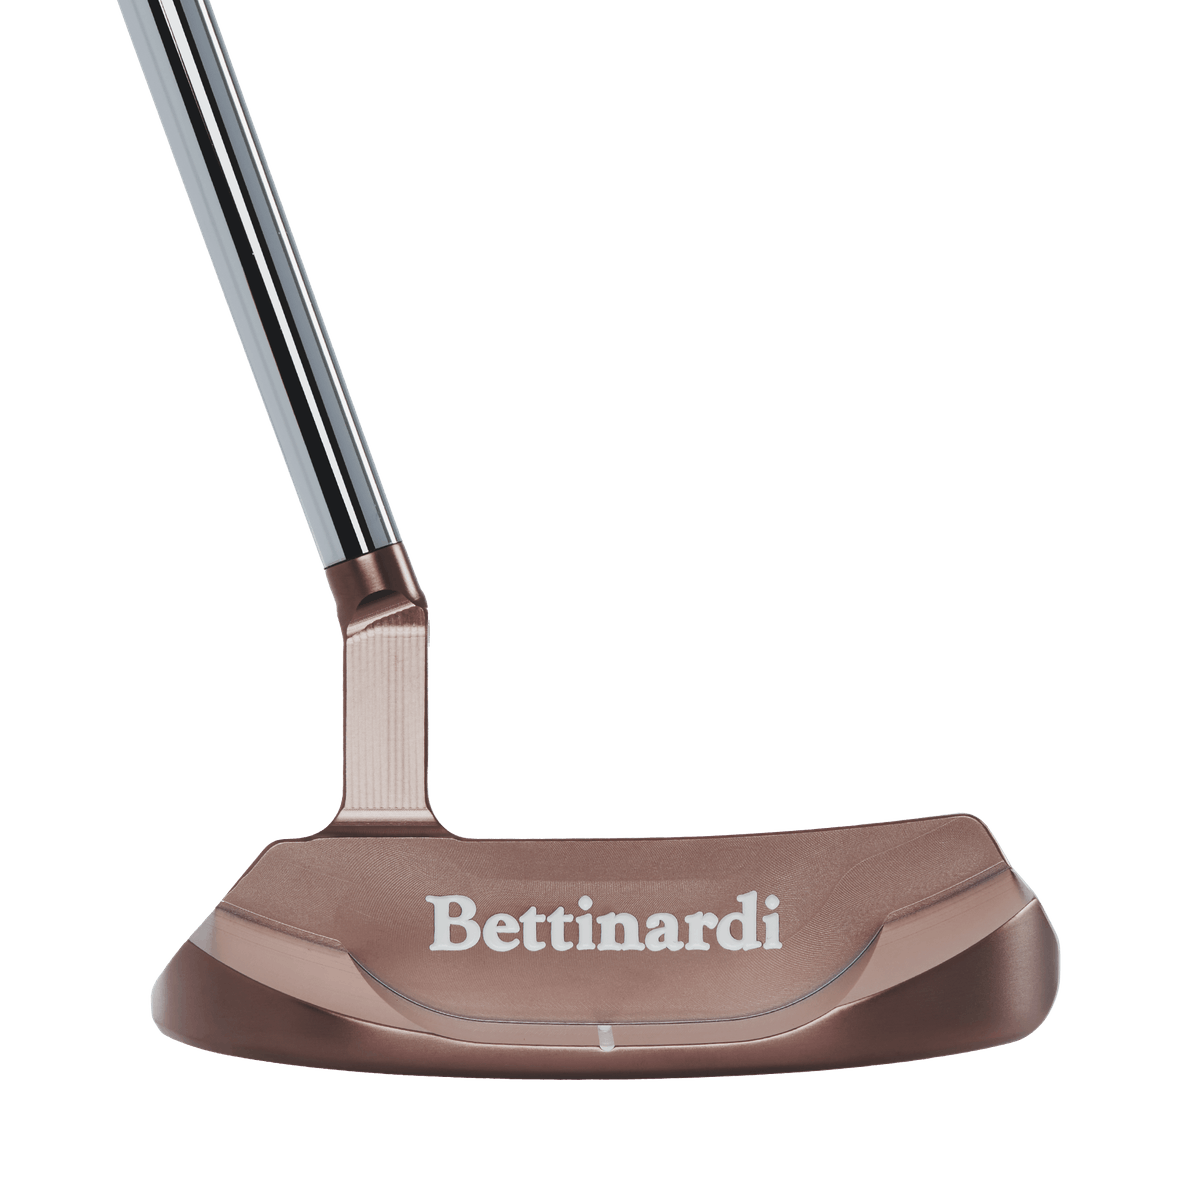 Bettinardi 2023 Queen B14 Putter · Right Handed · 35 · Standard · Copper